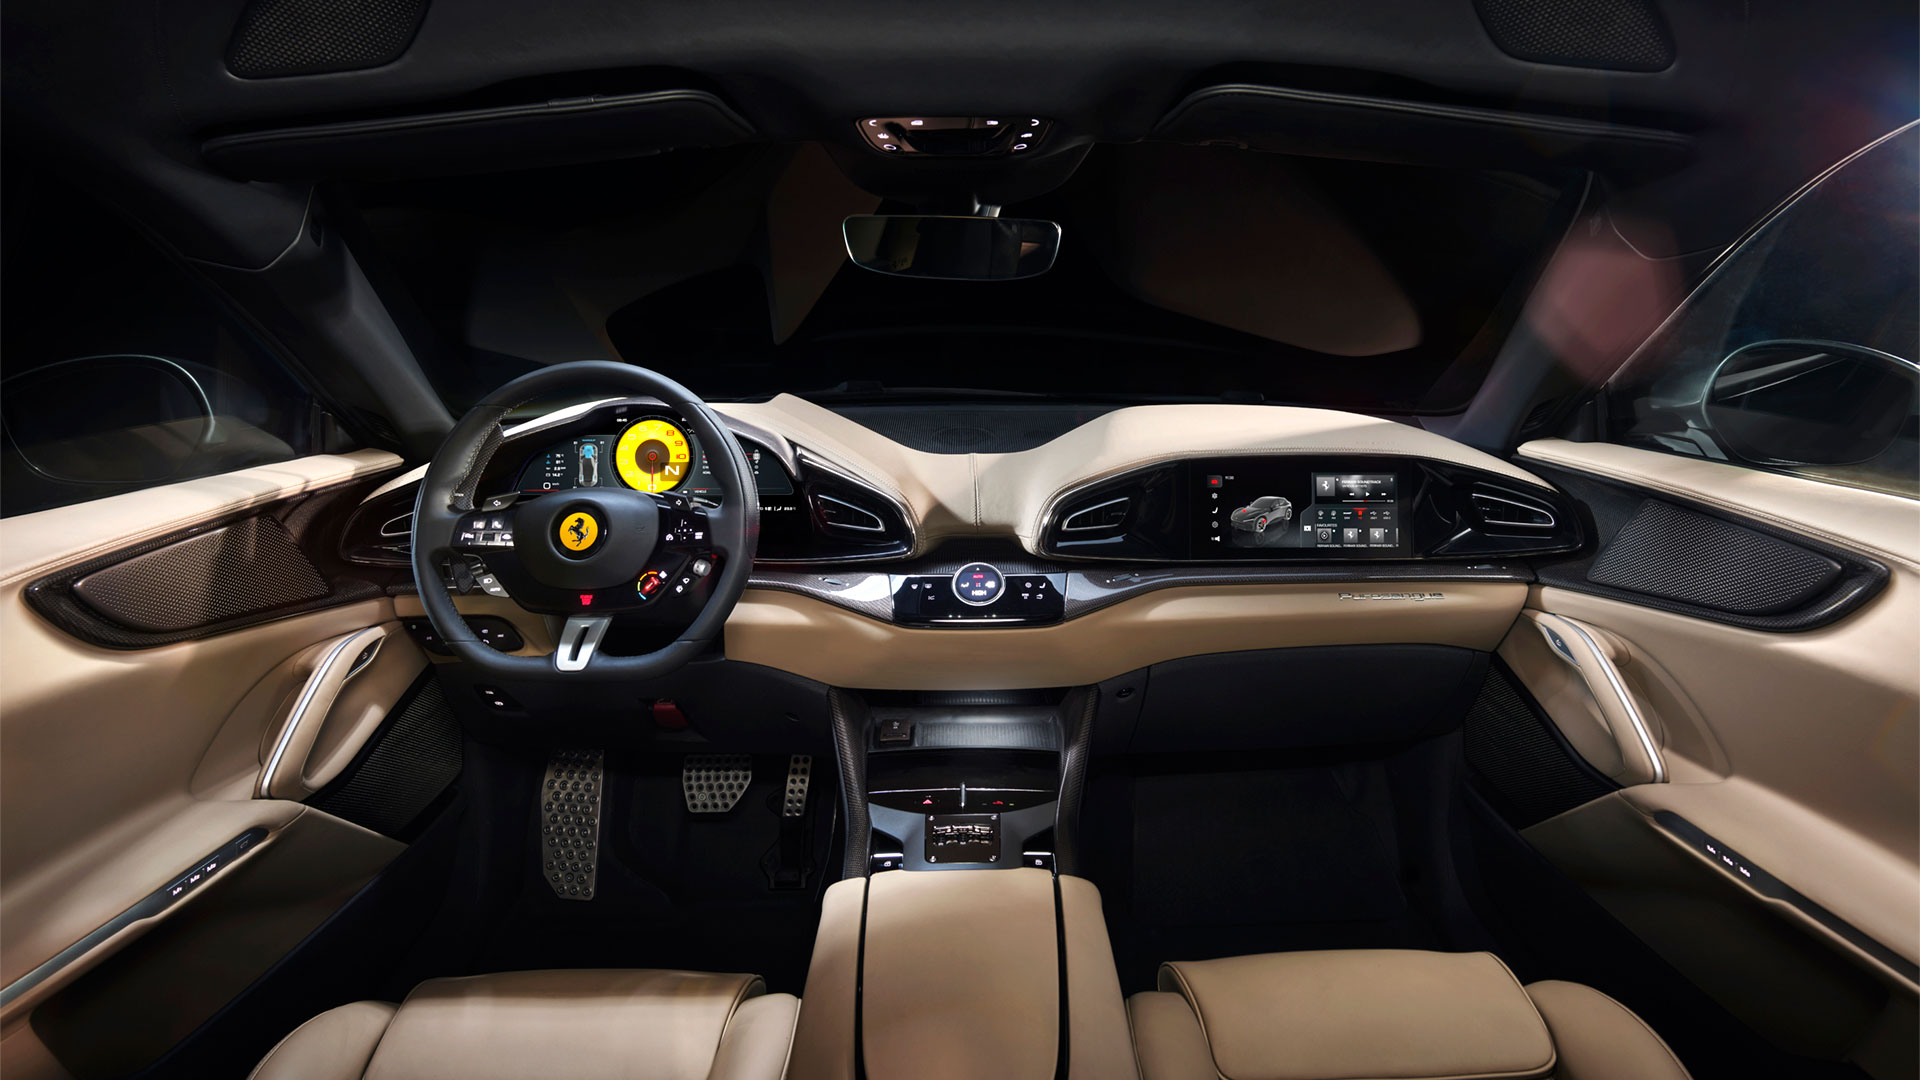 "Un auto pensado más allá del conductor", dice Ferrari, y se puede apreciar claramente en el tablero con una sección exclusiva para el acompañante